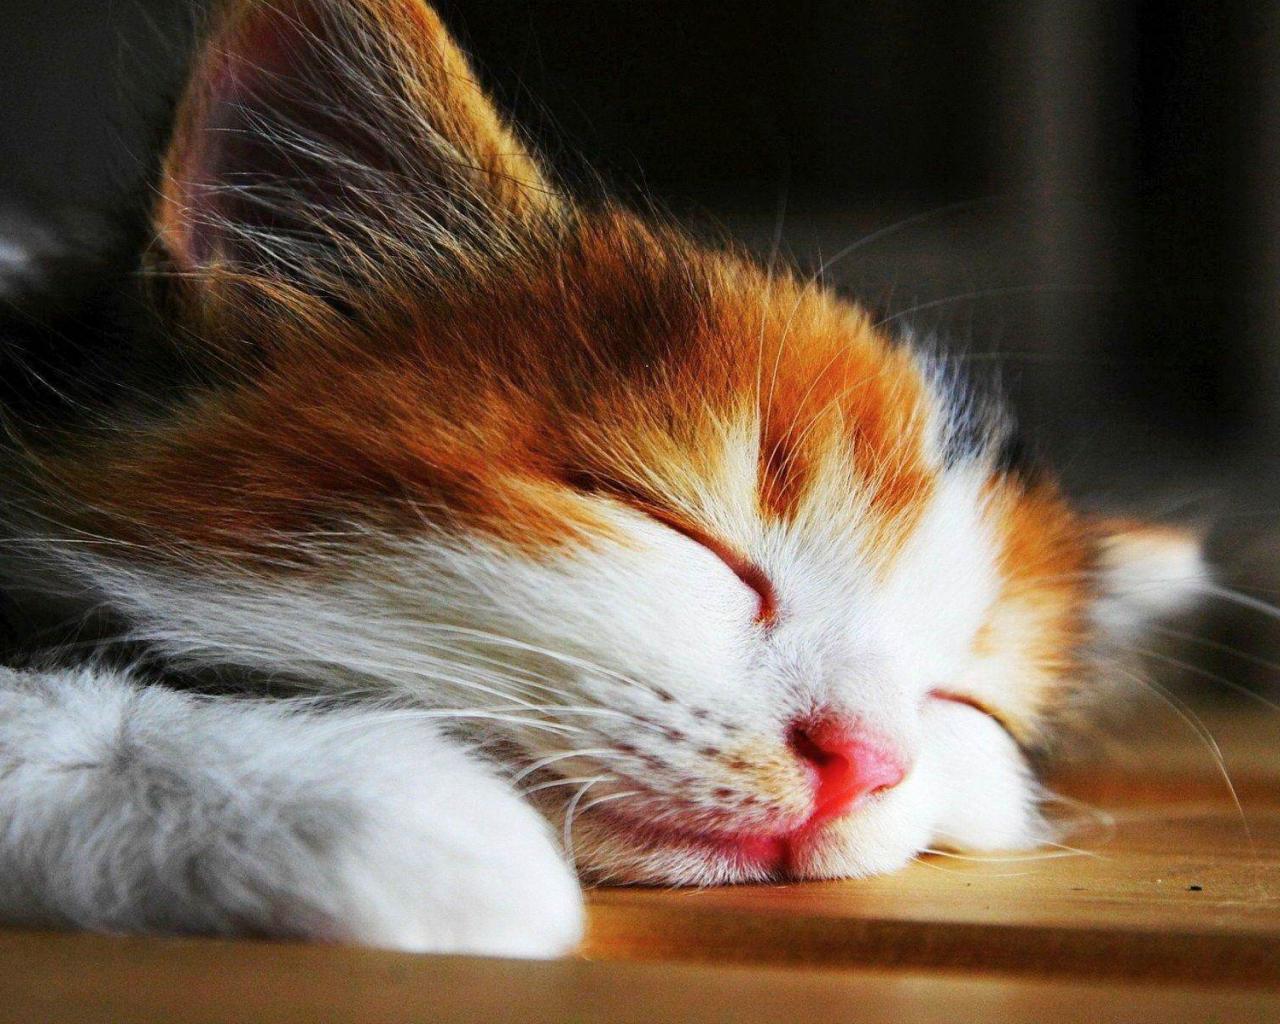 Sleepy Cat. Download Wallpaperdownloadwallpaper.net